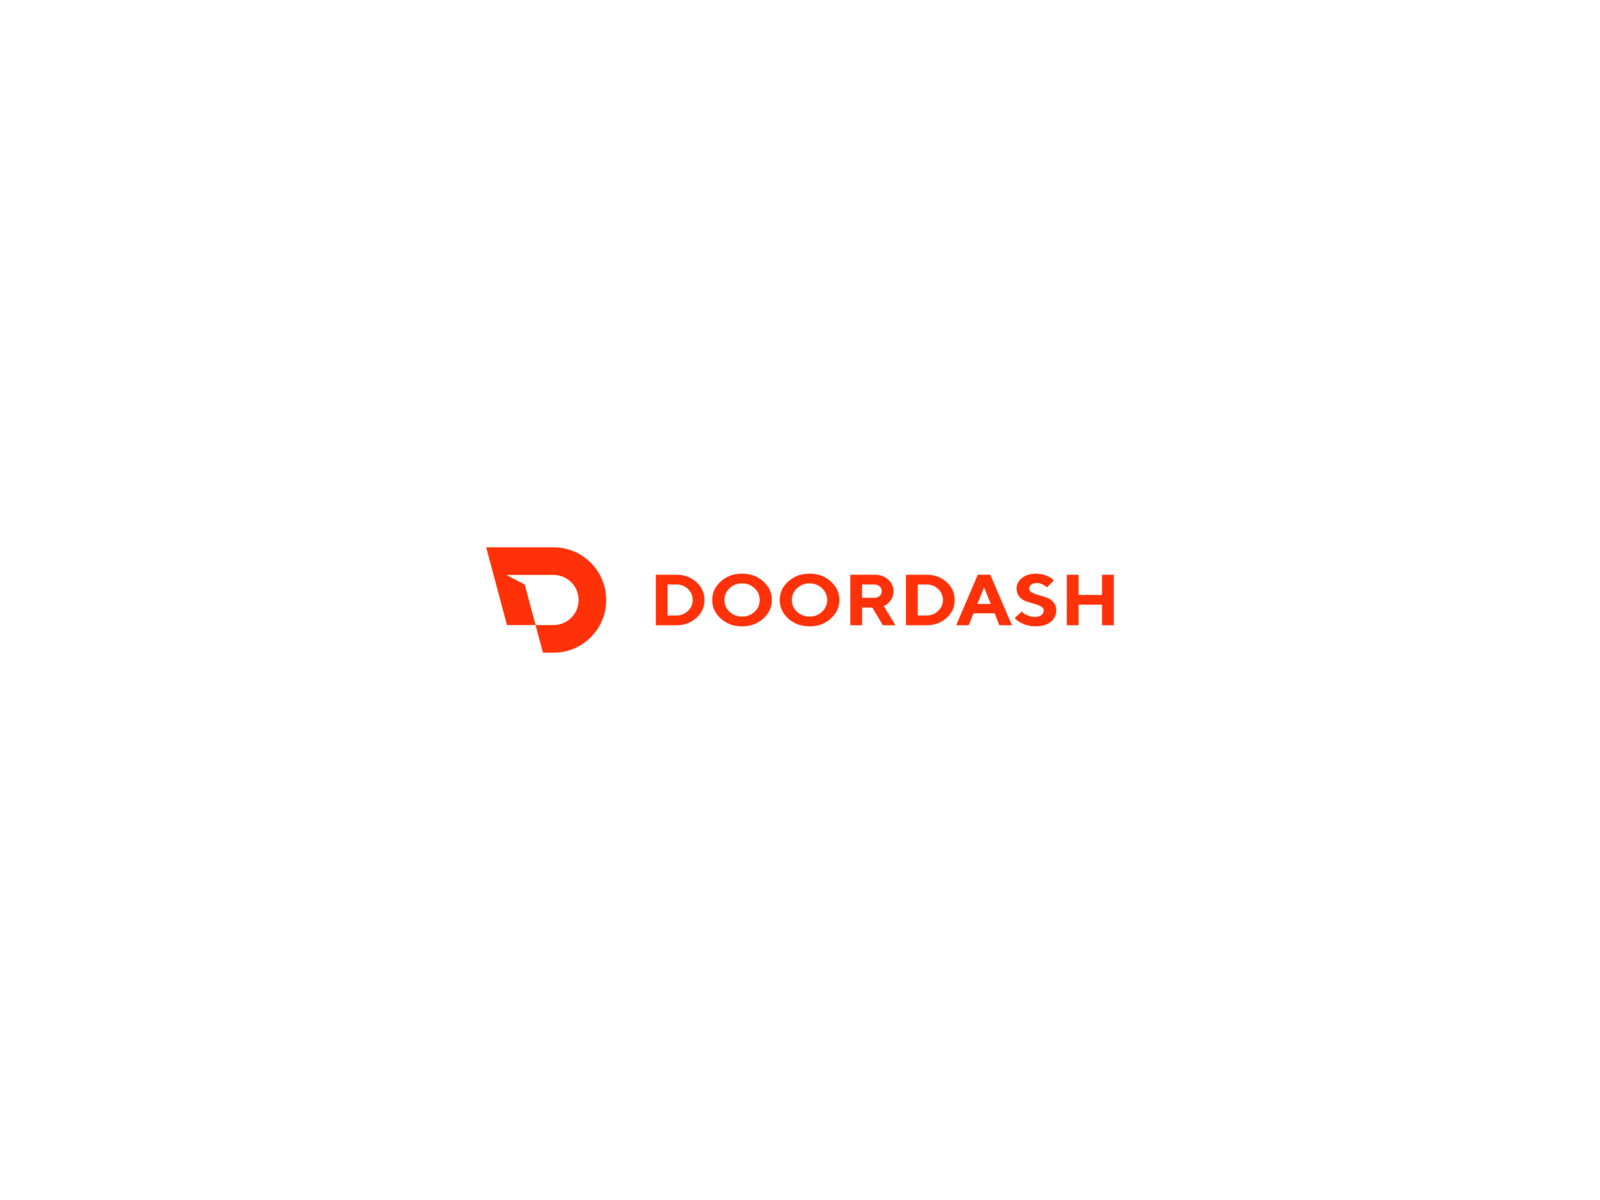 DoorDash by Dennis Pasyuk on Dribbble